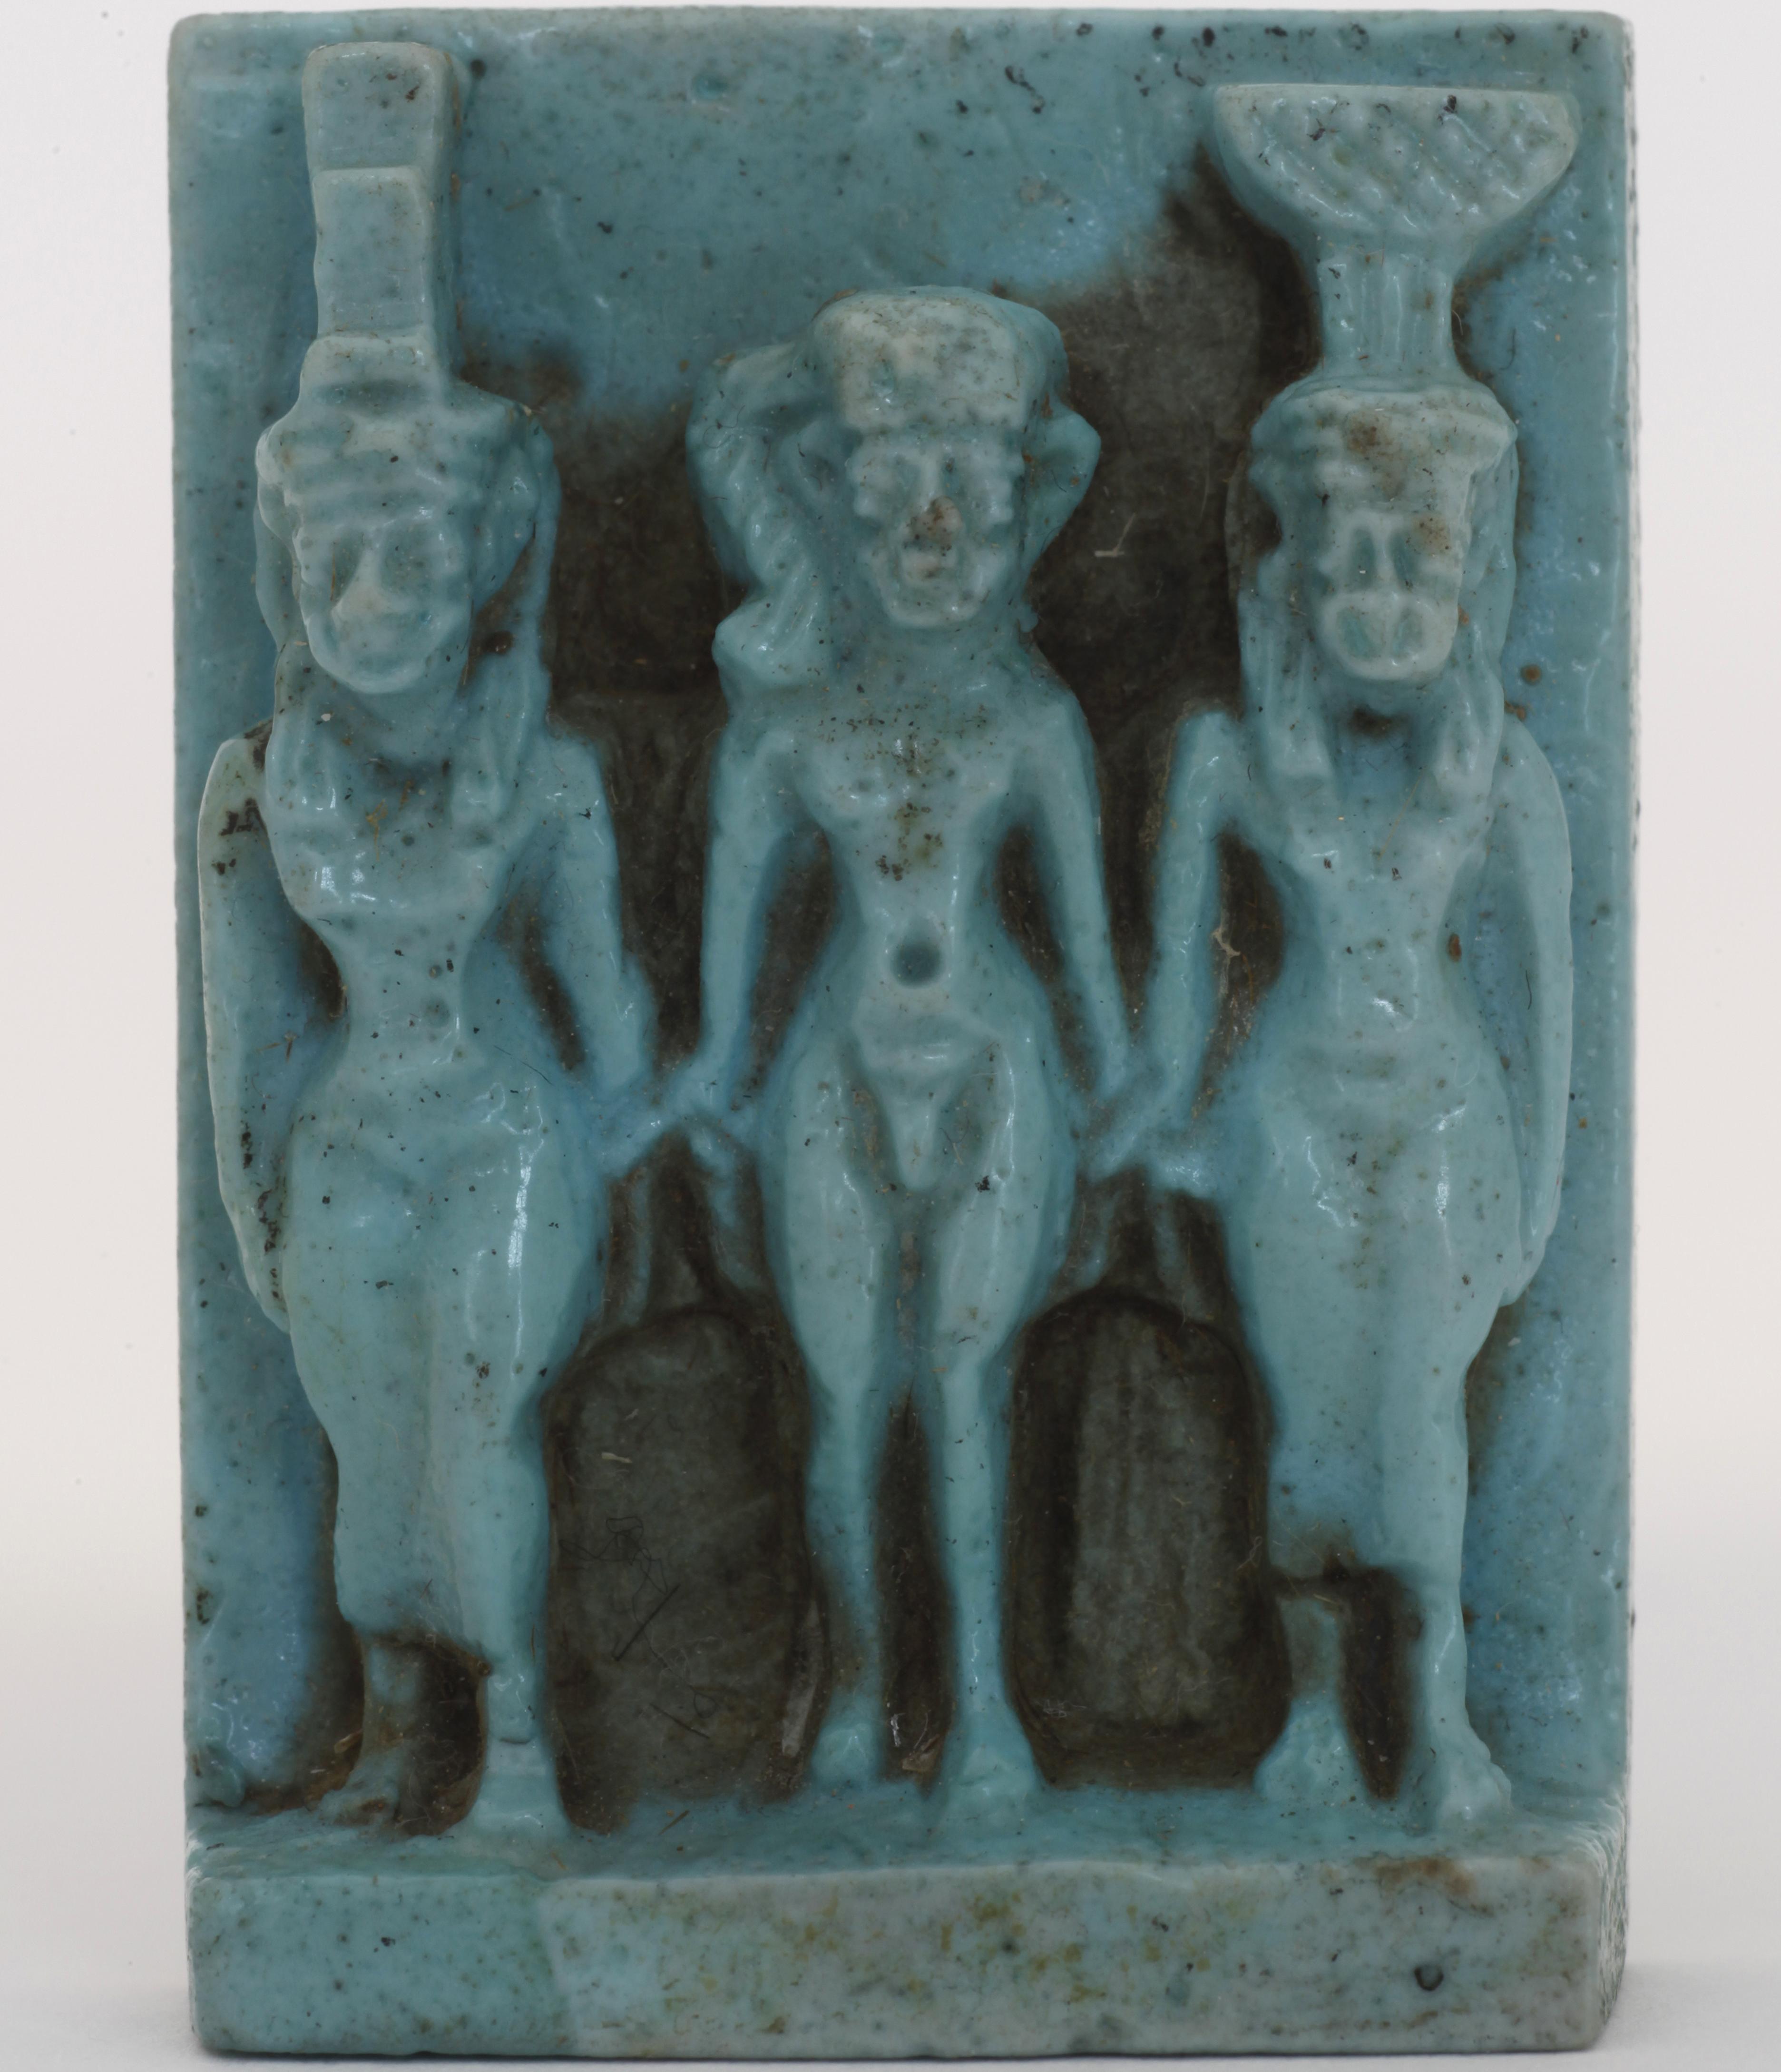 Eine Aufnahme zeigt das kleine Amulett mit drei Göttern, die Göttertriade